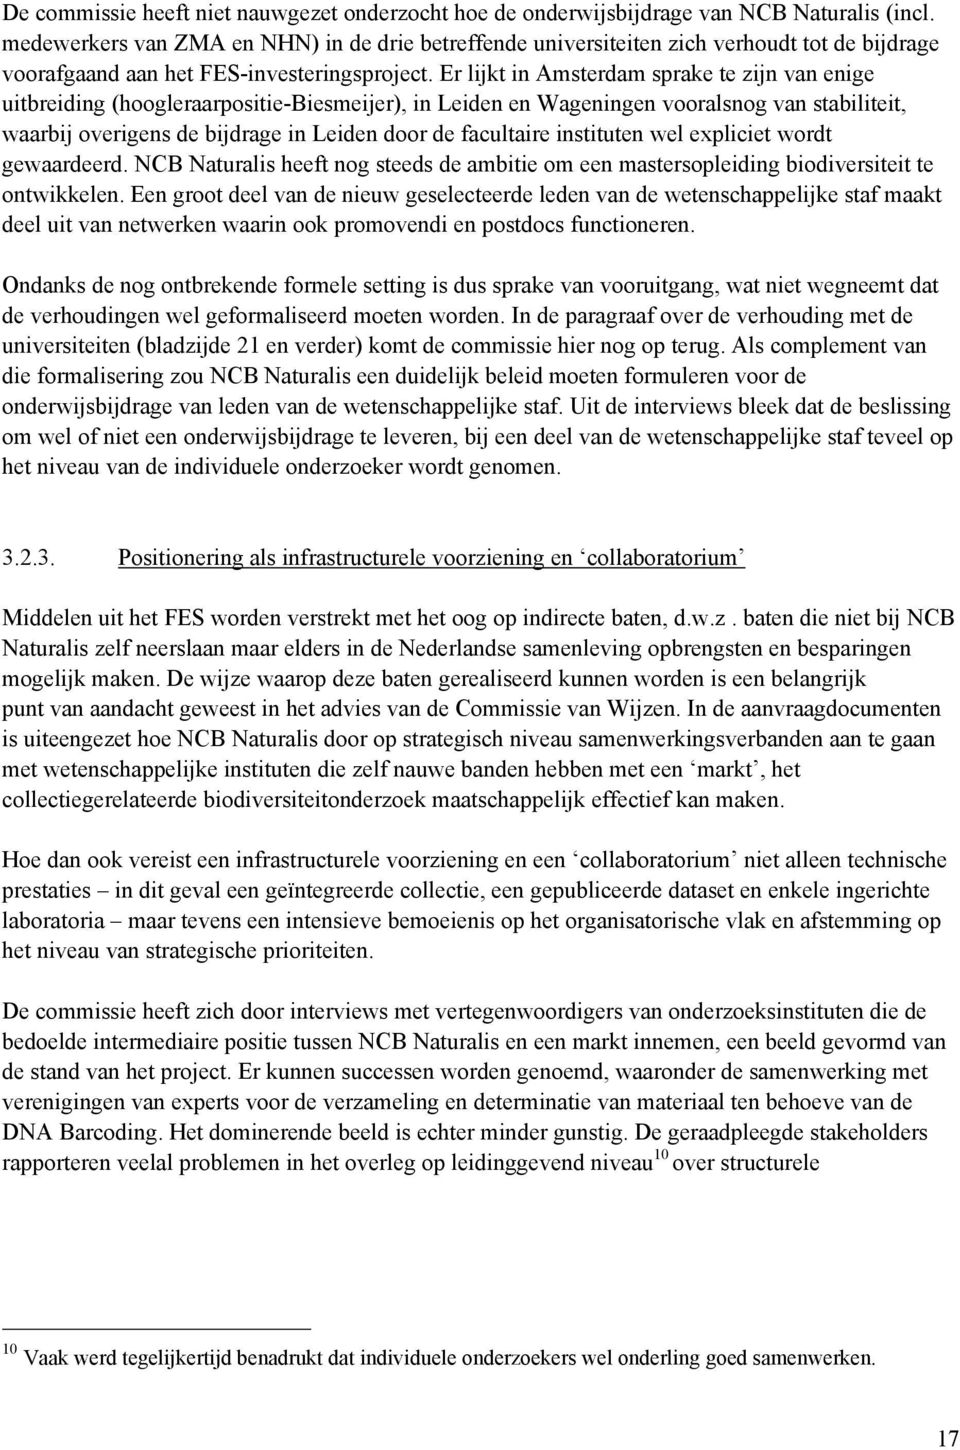 Er lijkt in Amsterdam sprake te zijn van enige uitbreiding (hoogleraarpositie-biesmeijer), in Leiden en Wageningen vooralsnog van stabiliteit, waarbij overigens de bijdrage in Leiden door de